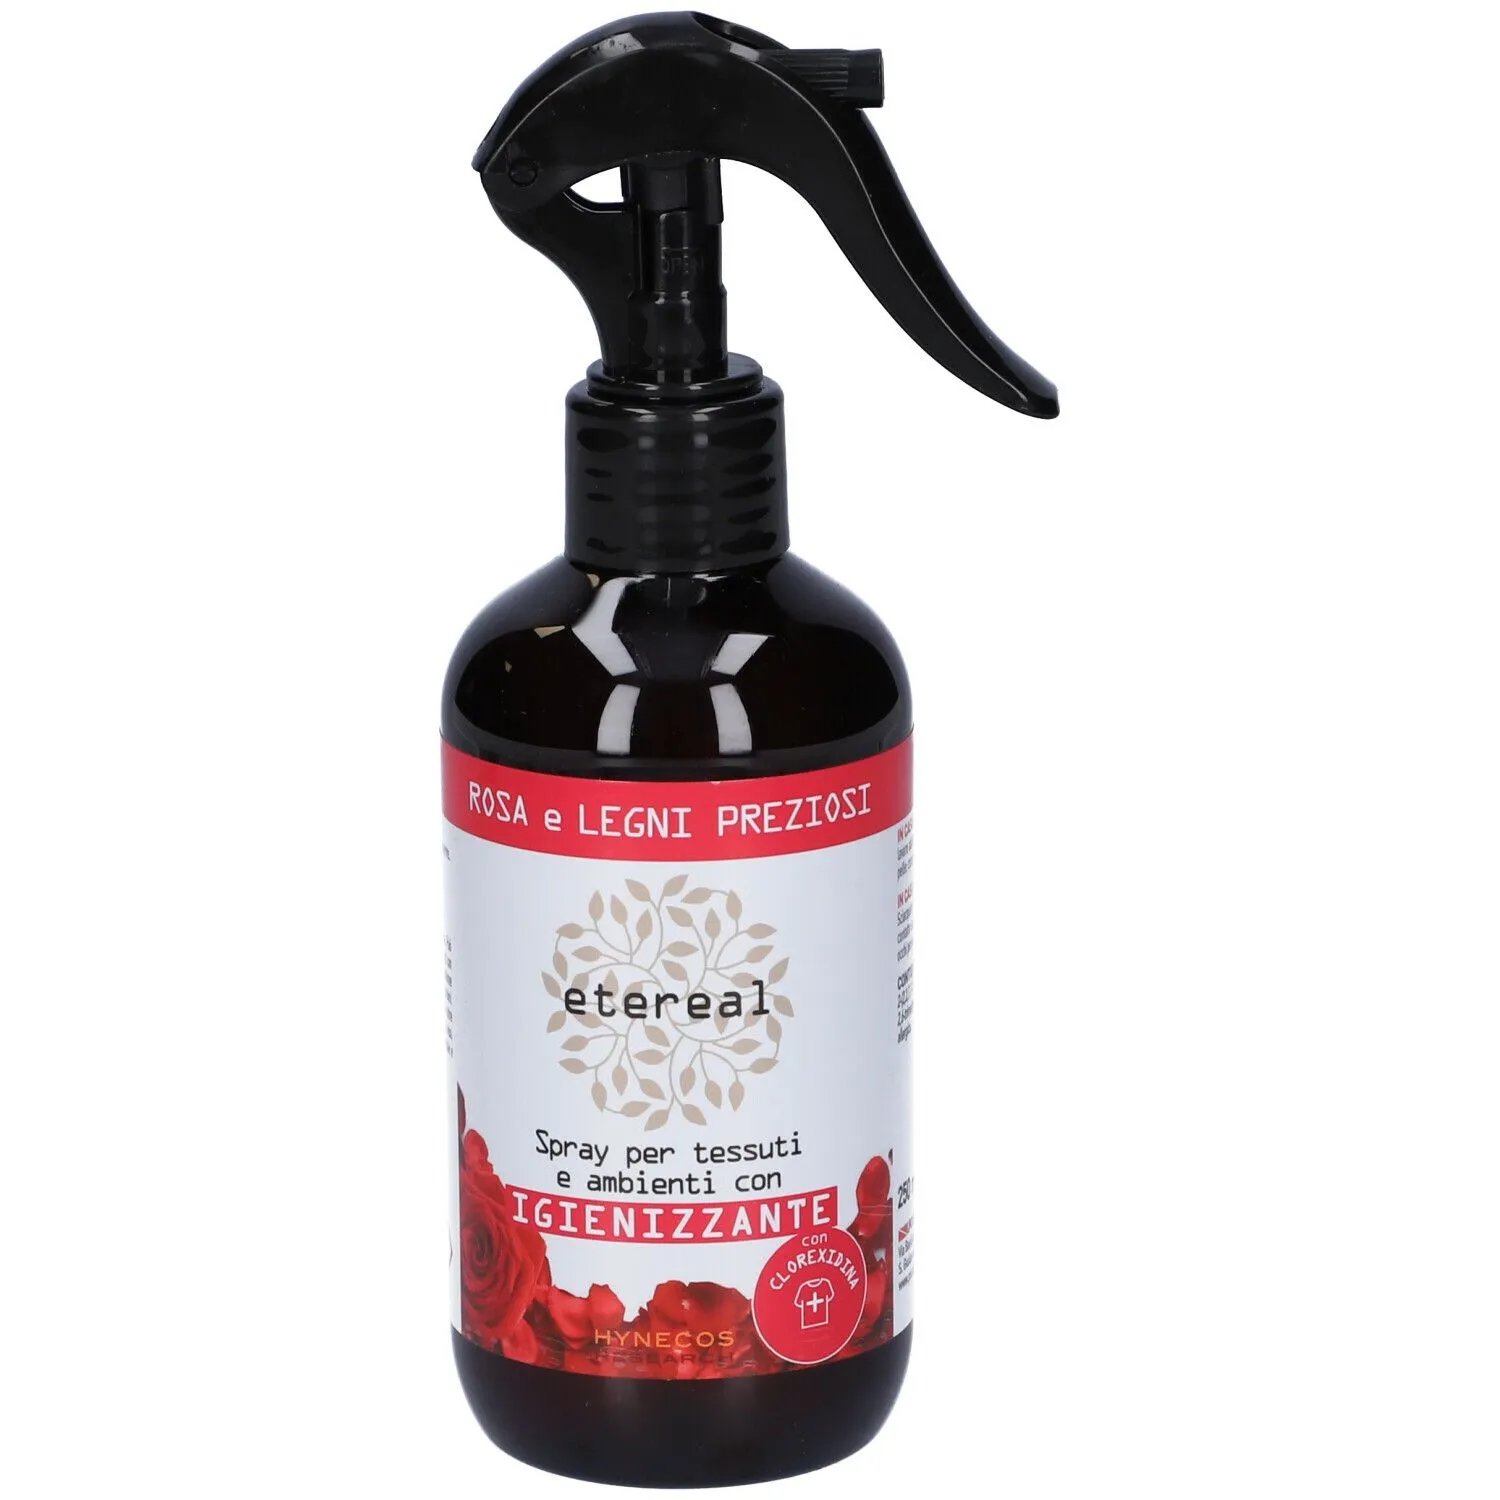 Etereal Spray Per Tessuti E Ambienti Igienizzante Rosa E Legni Preziosi